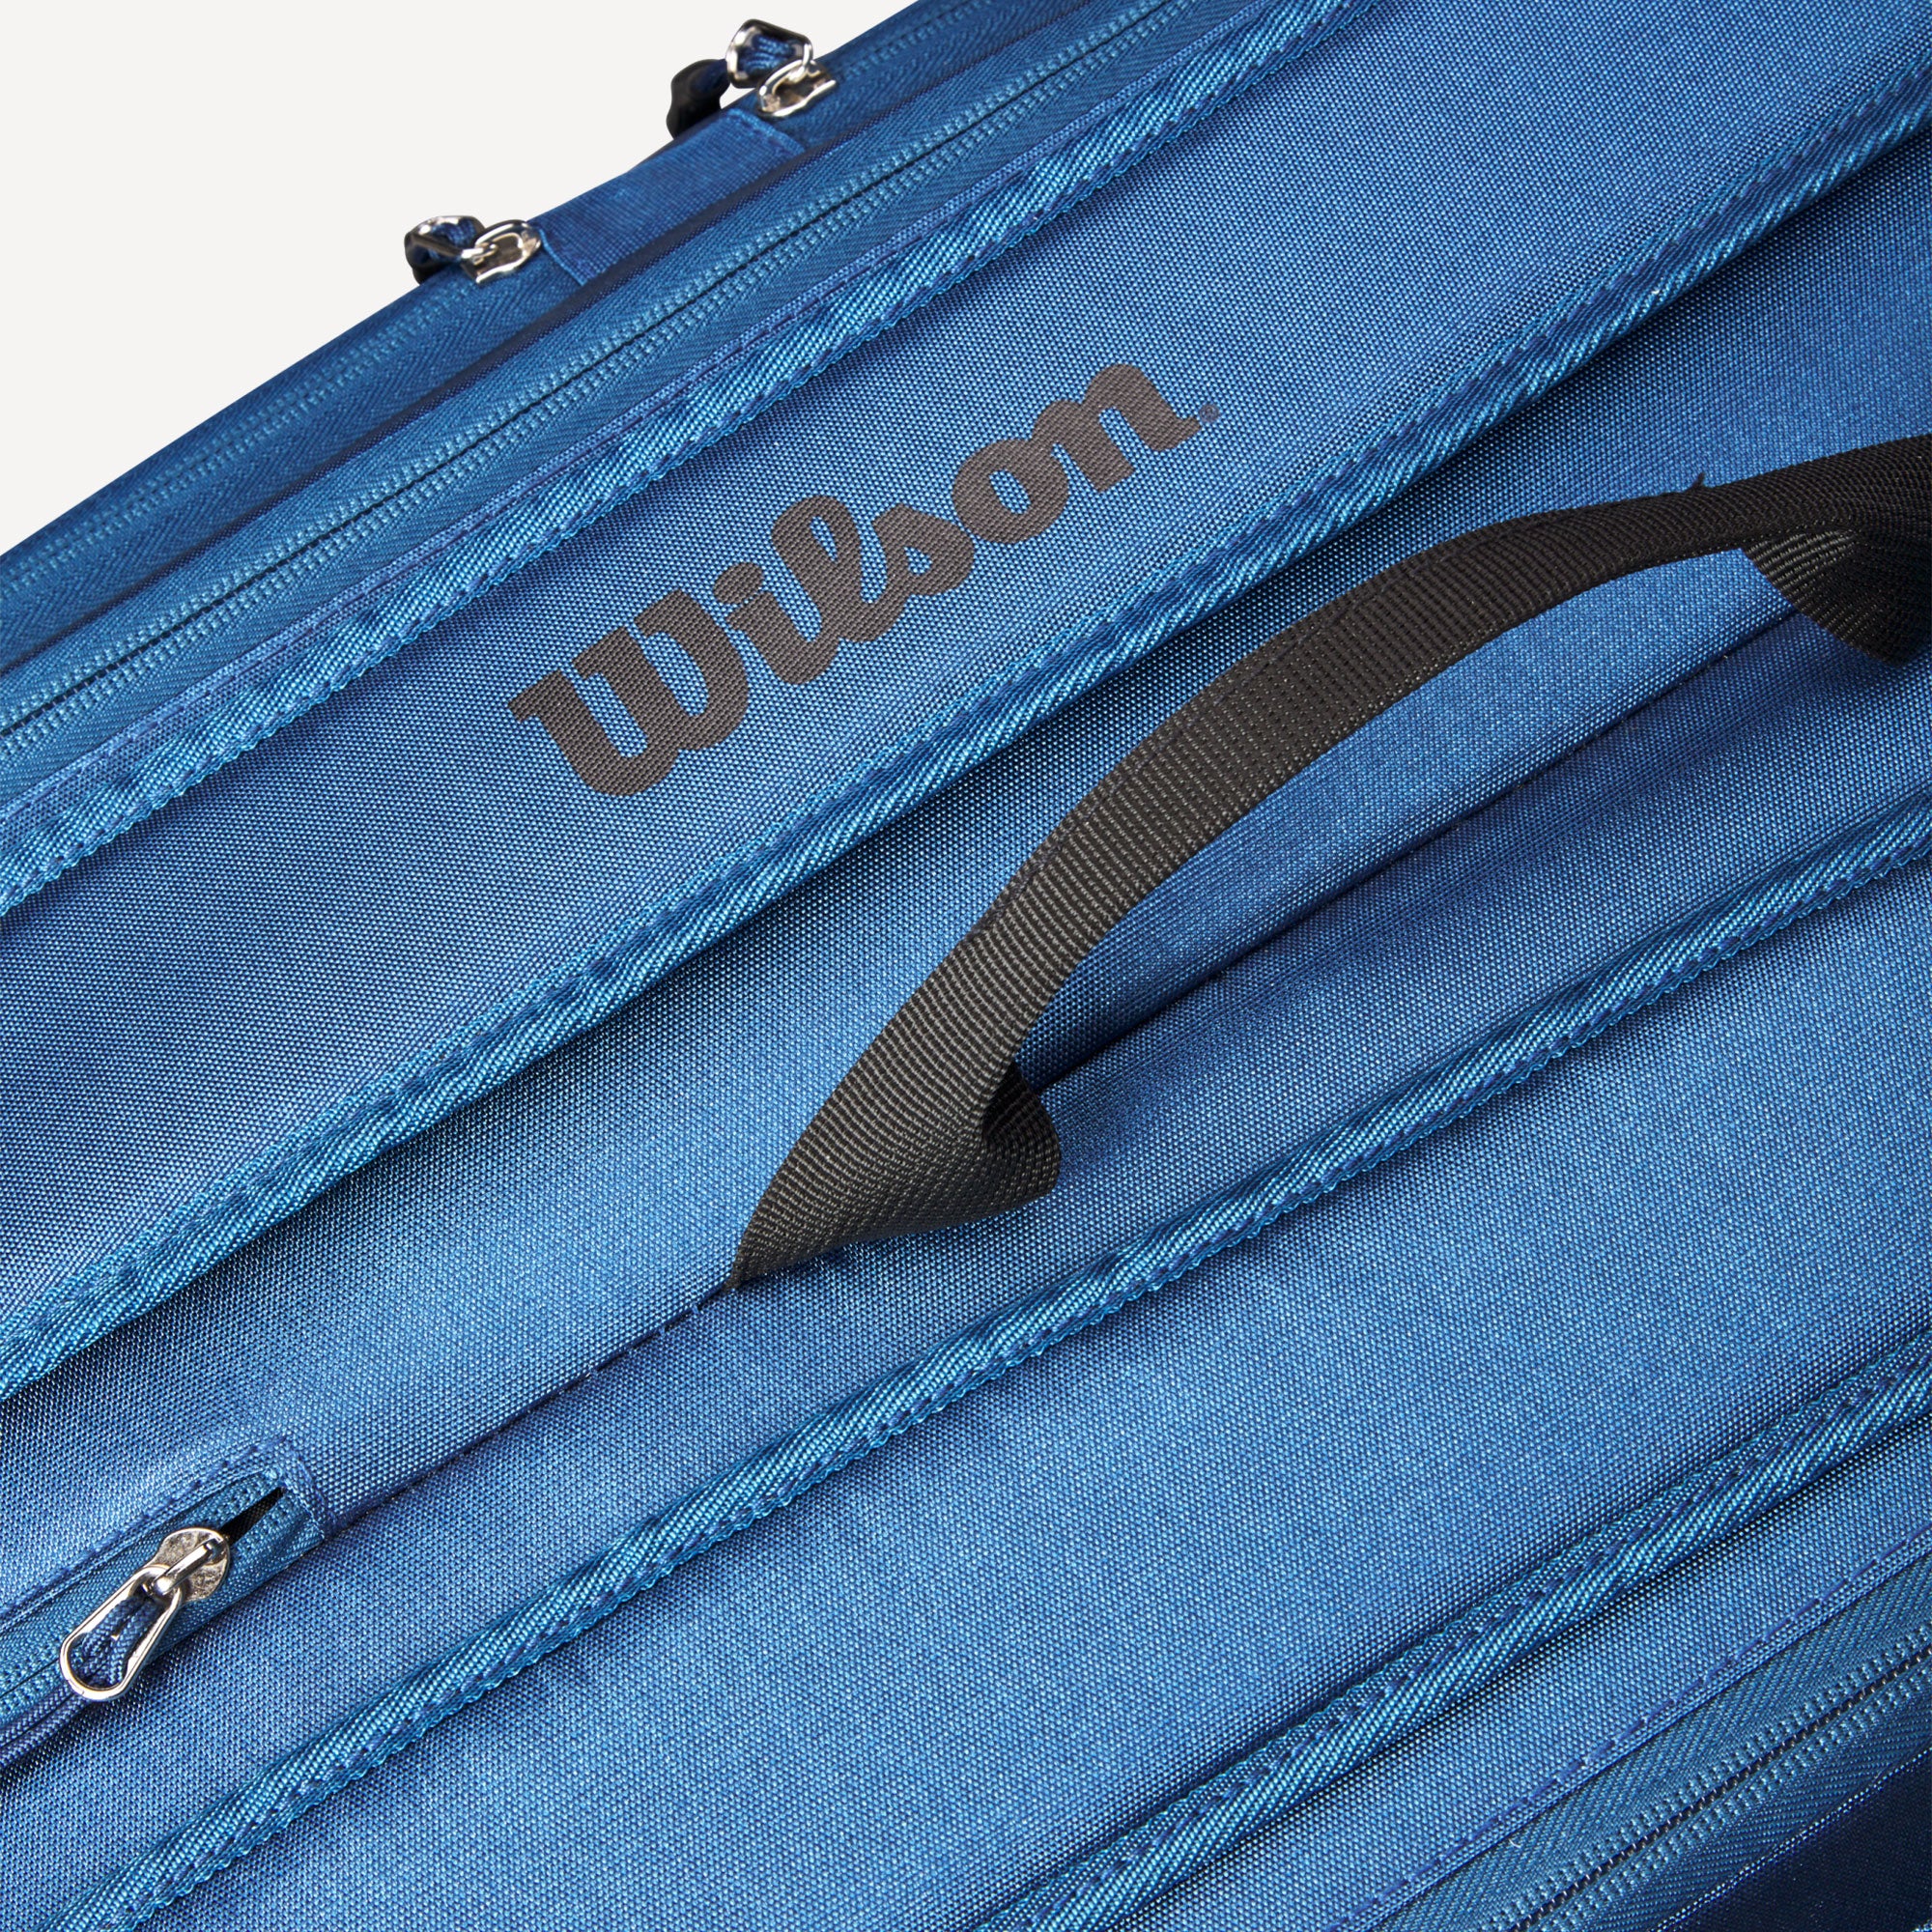 Wilson Tour Ultra 12 Pack Tennis Bag Blue (4)